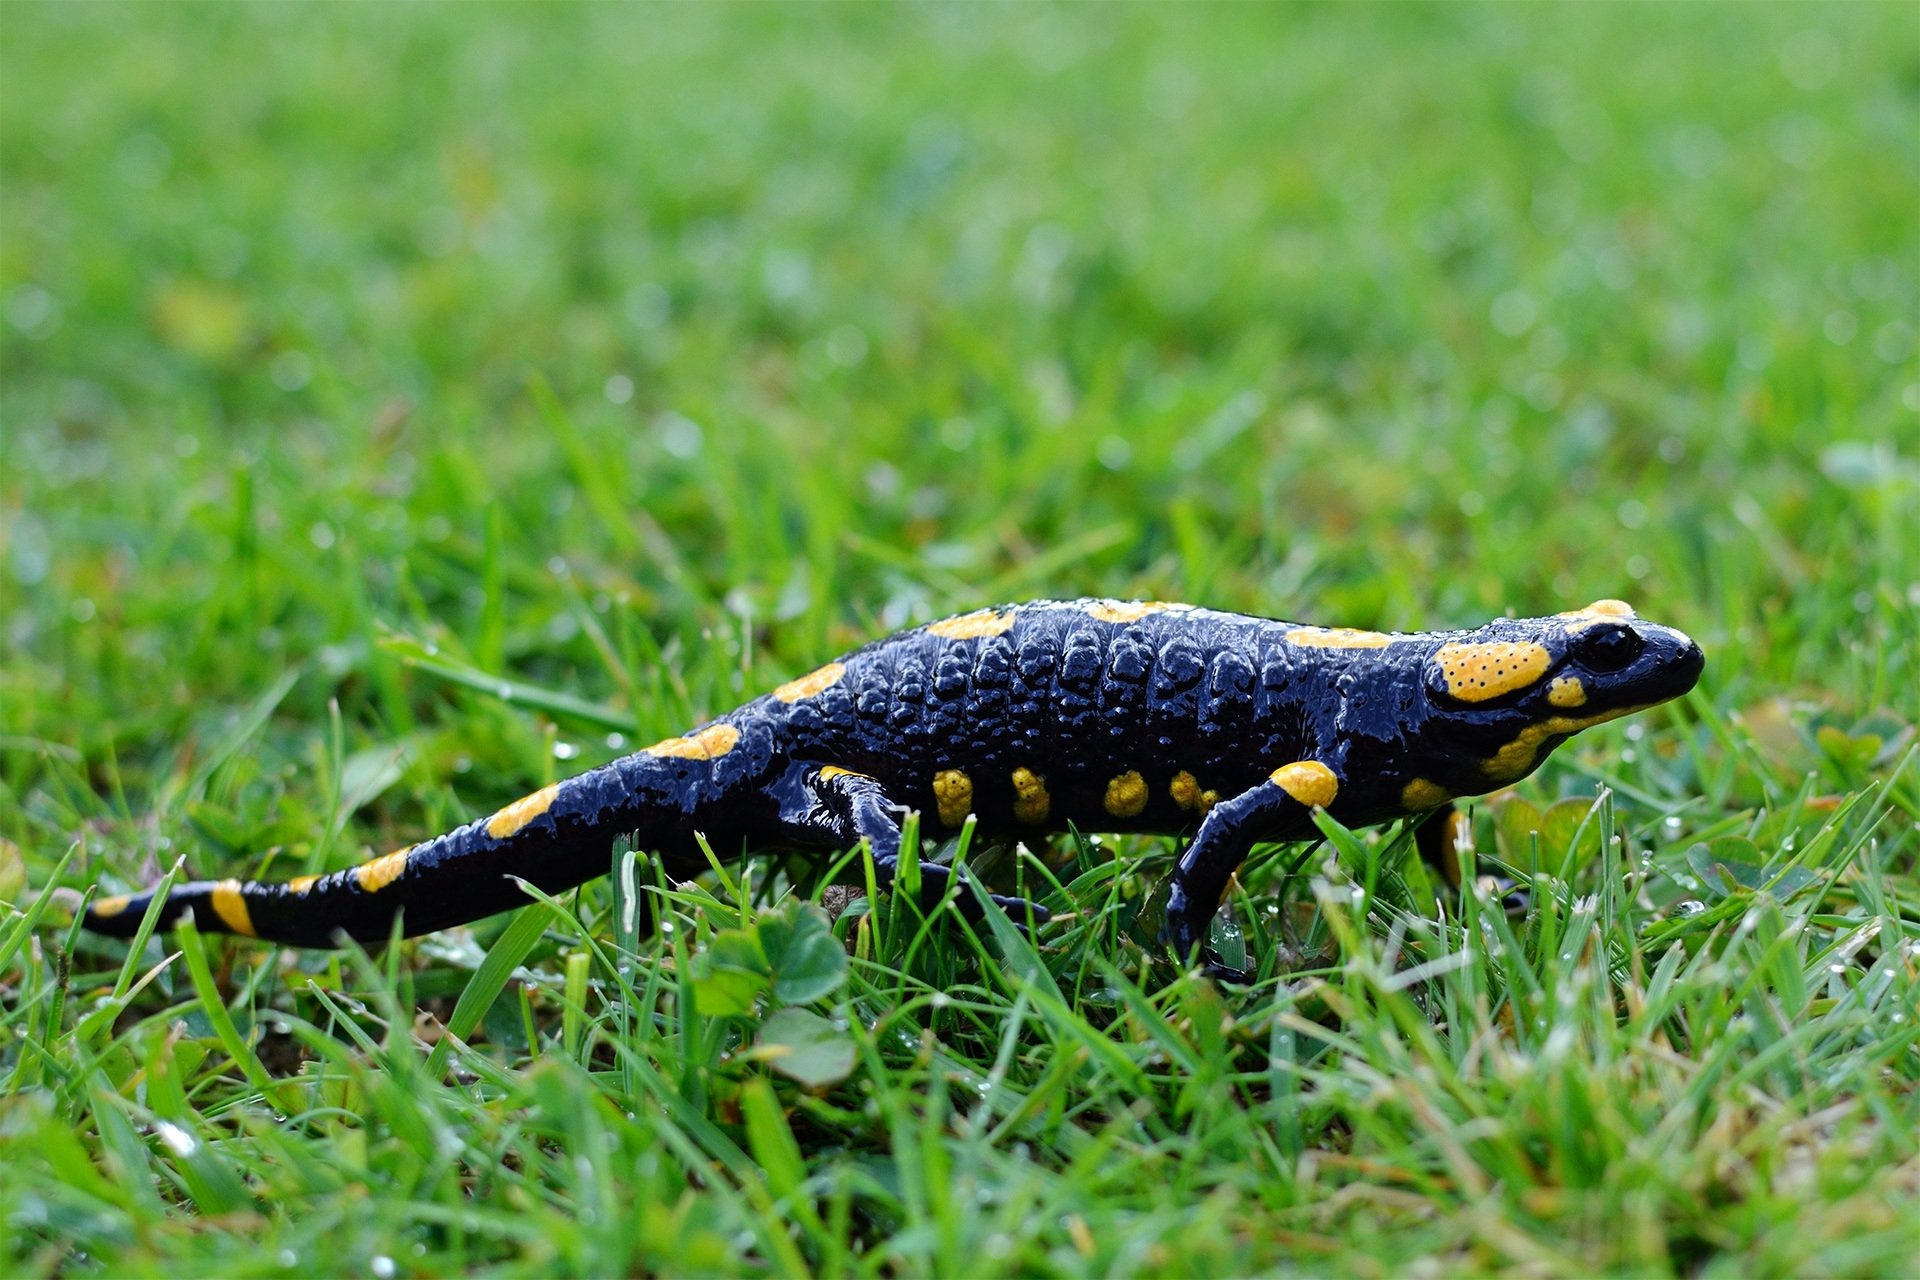 Salamander hd